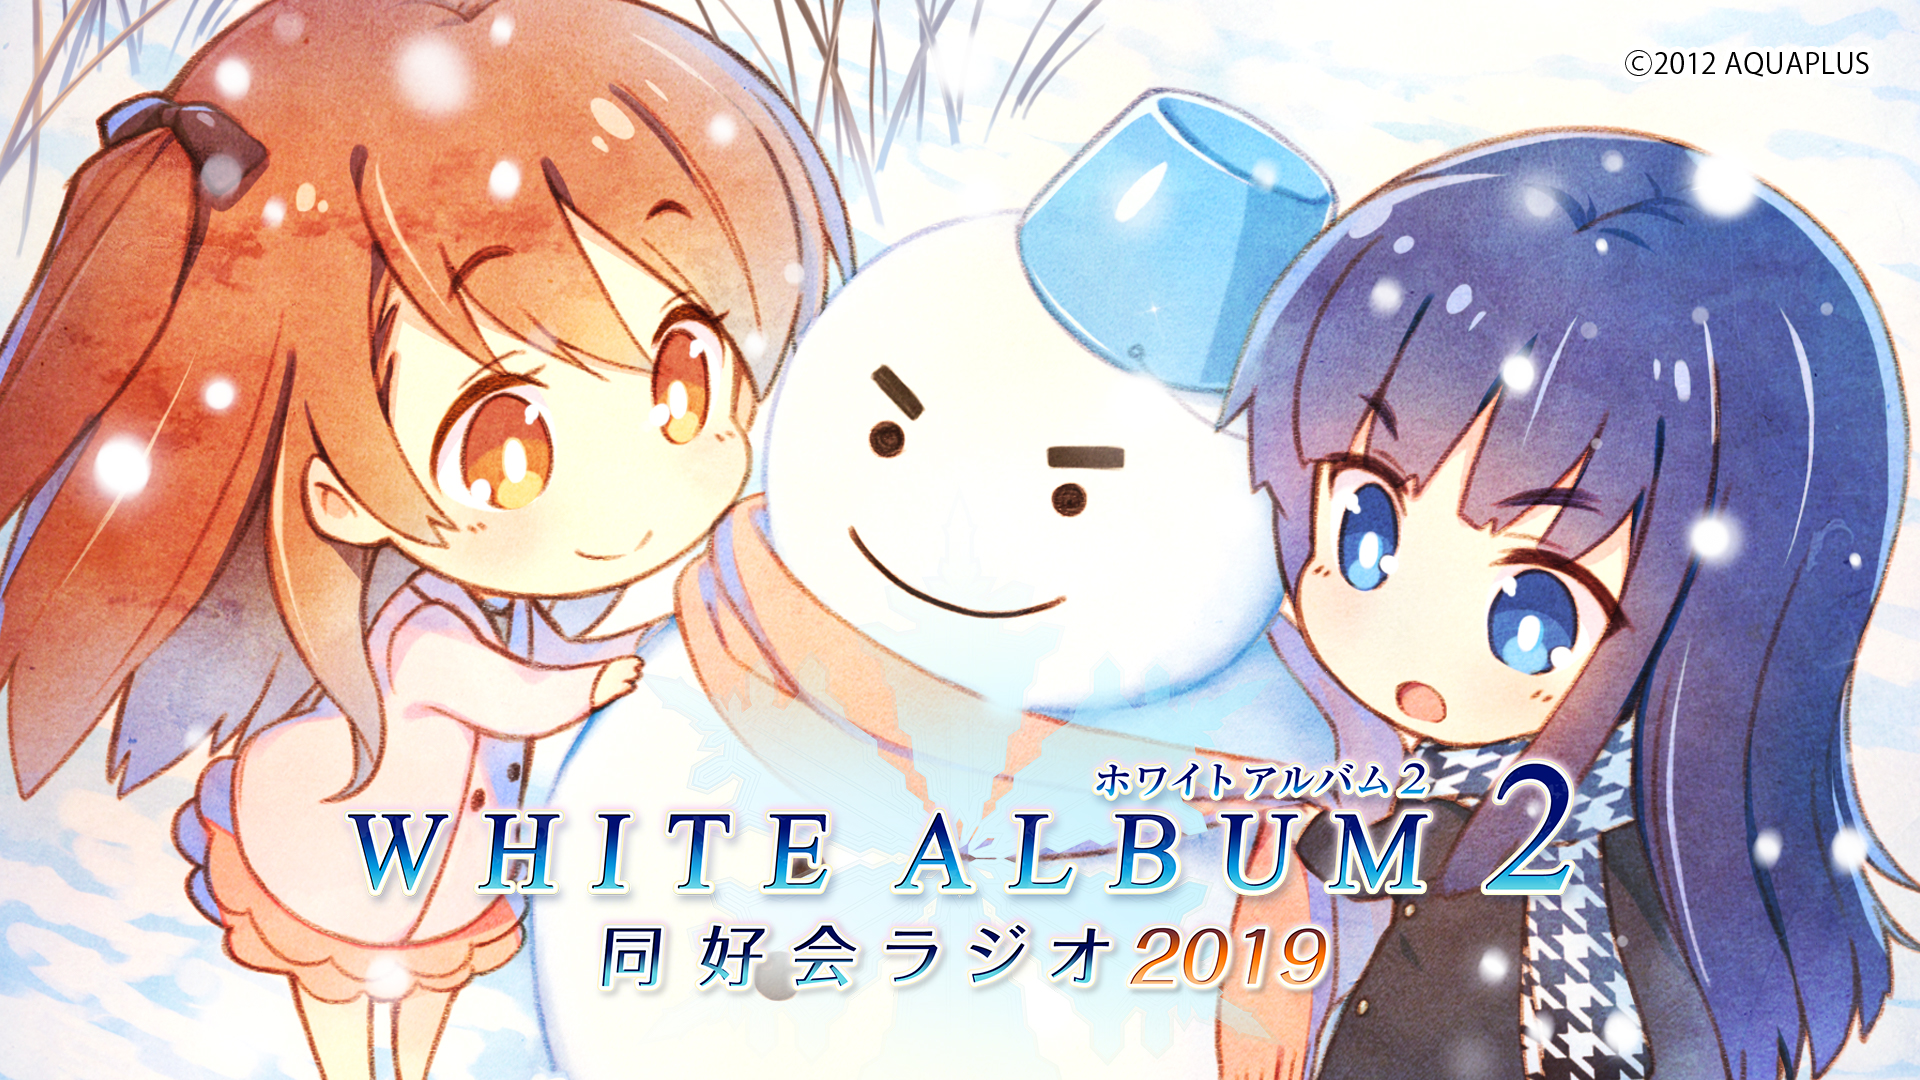 スペシャル | WHITE ALBUM2 幸せの向こう側 PS Vita